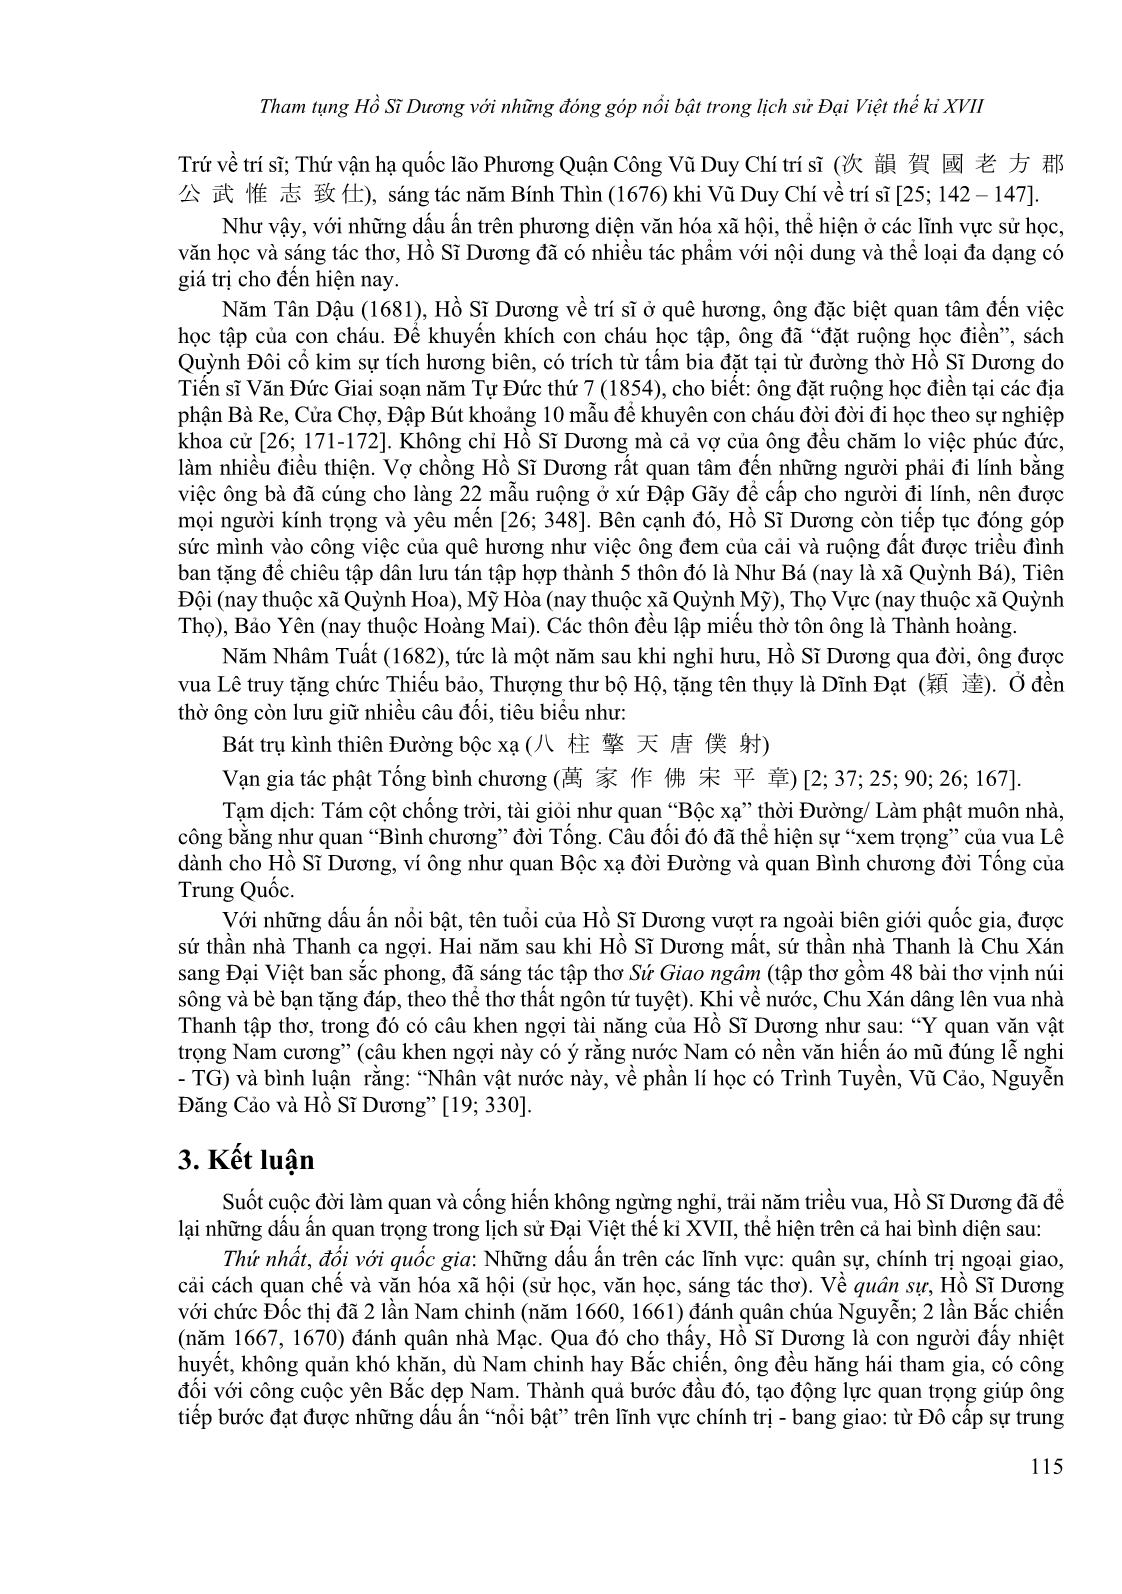 Tham tụng Hồ Sĩ Dương với những đóng góp nổi bật trong lịch sử Đại Việt thế kỉ XVII trang 9